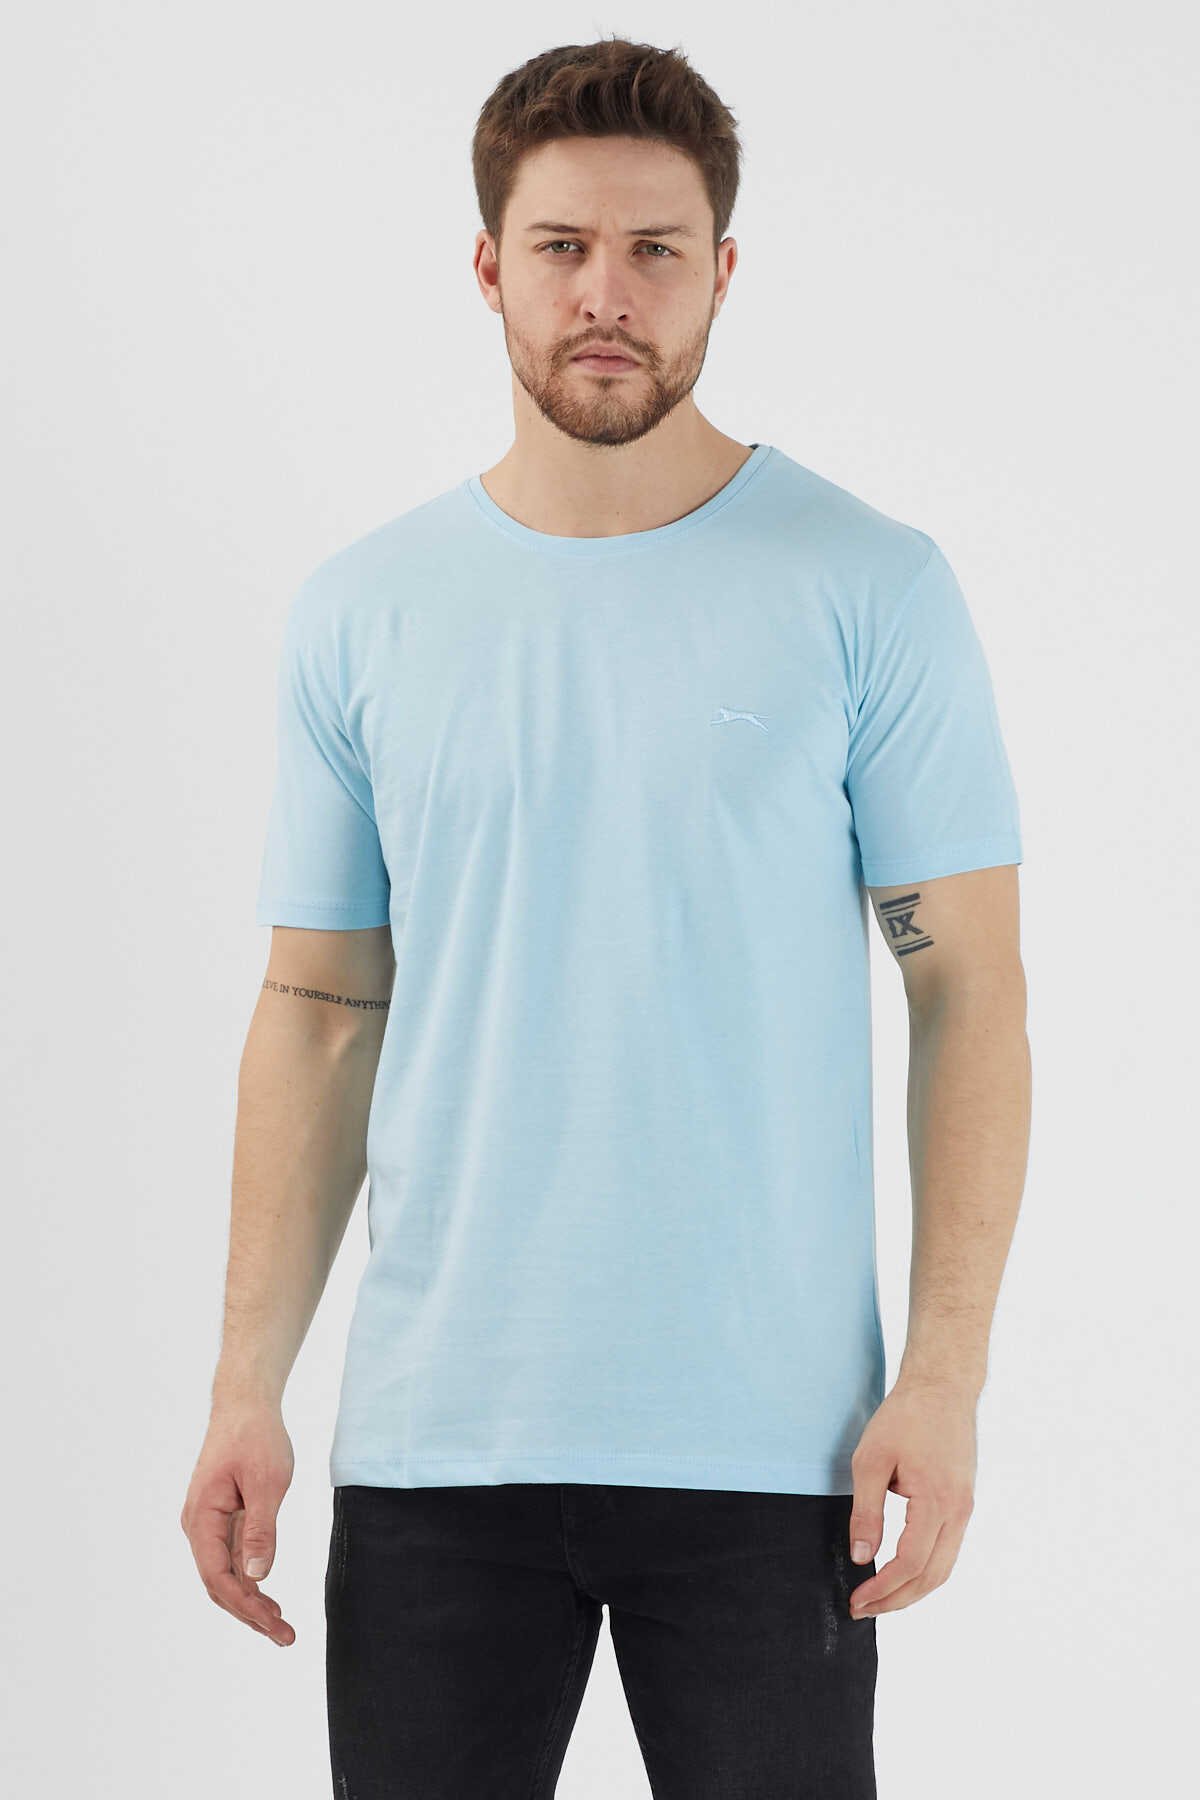 Slazenger - Slazenger SANDER KTN Erkek Kısa Kol T-Shirt Açık Mavi